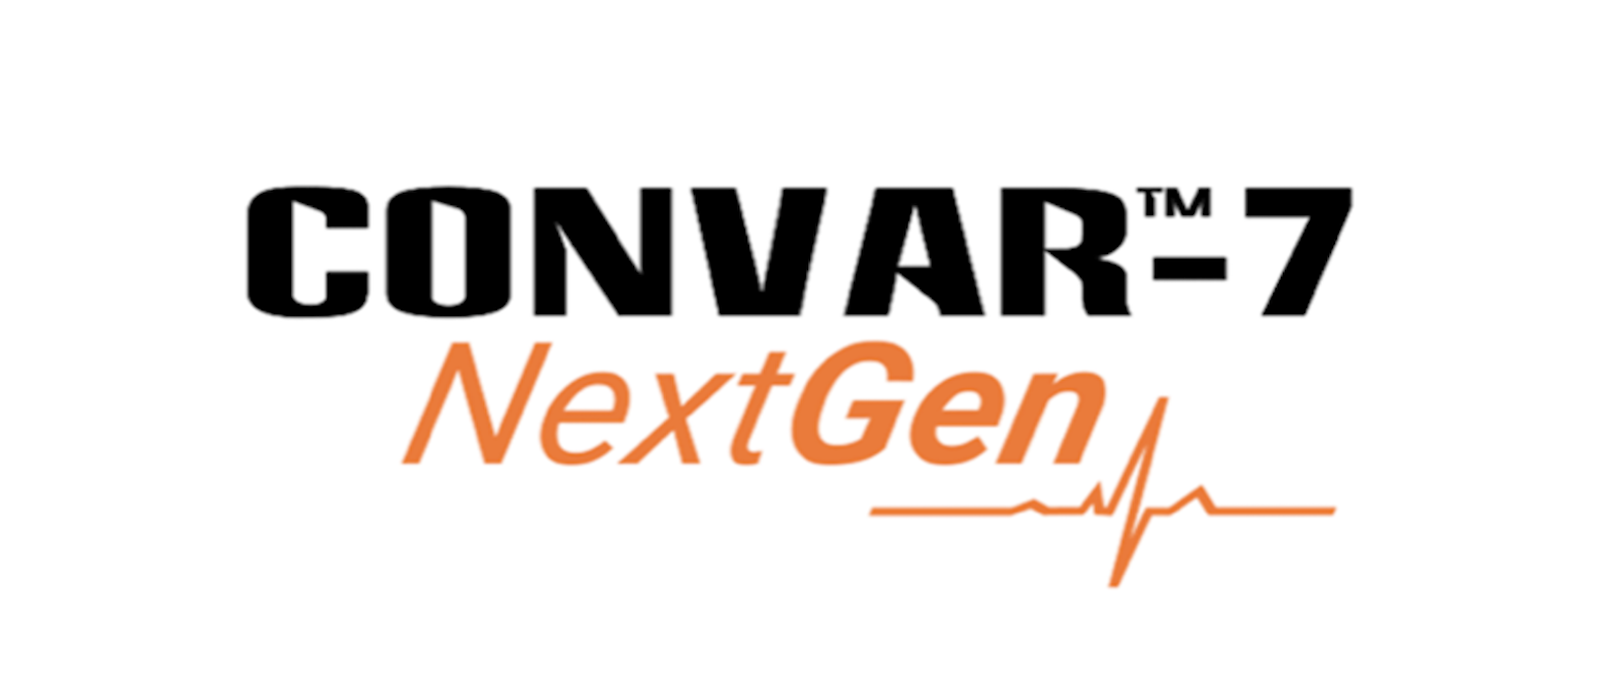 CONVAR-7 NextGen